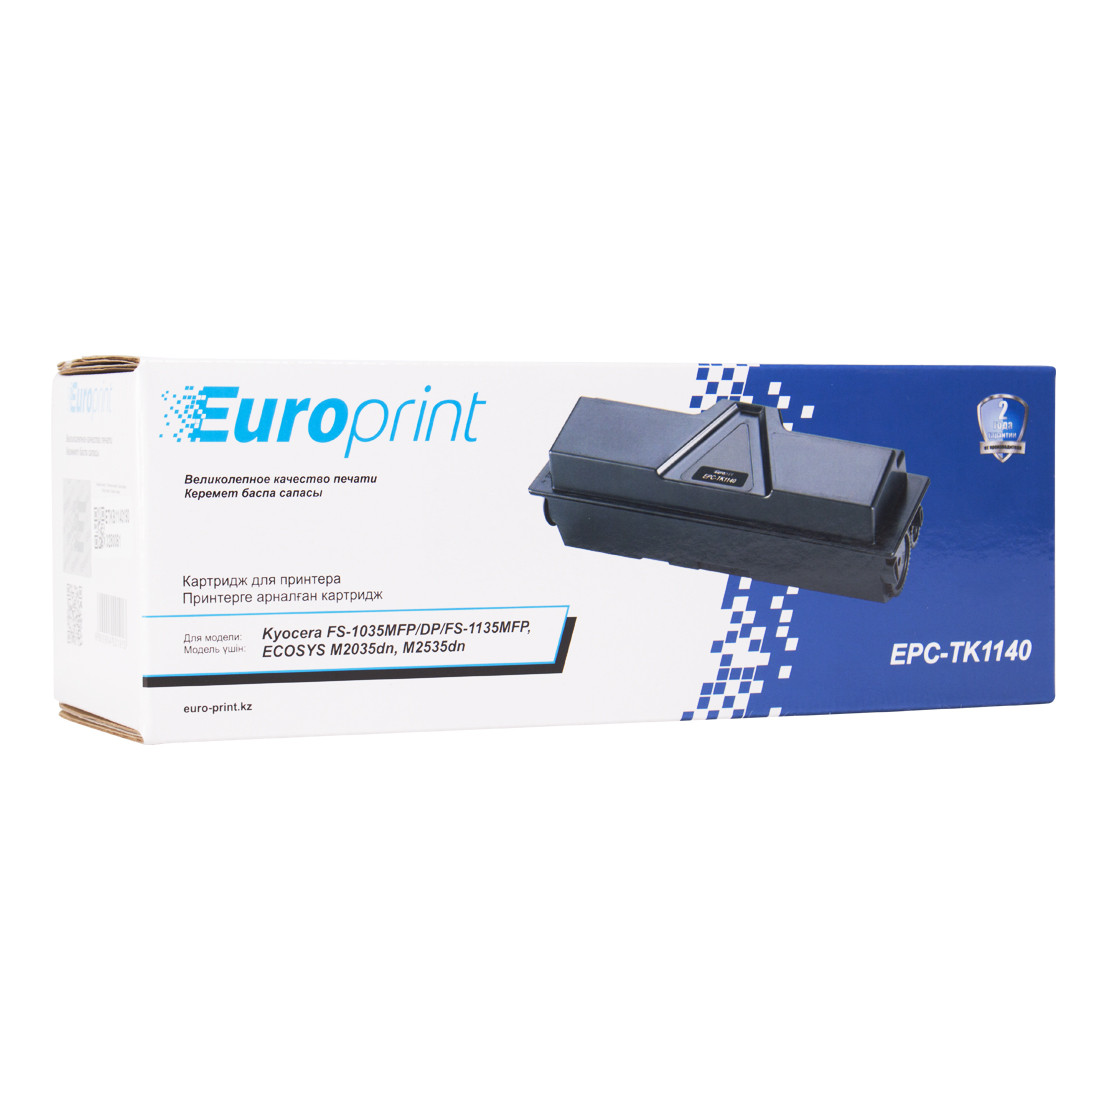 Europrint EPC-TK1140 Тонер-картридж TK1140 Для принтеров Kyocera, 7200 страниц.